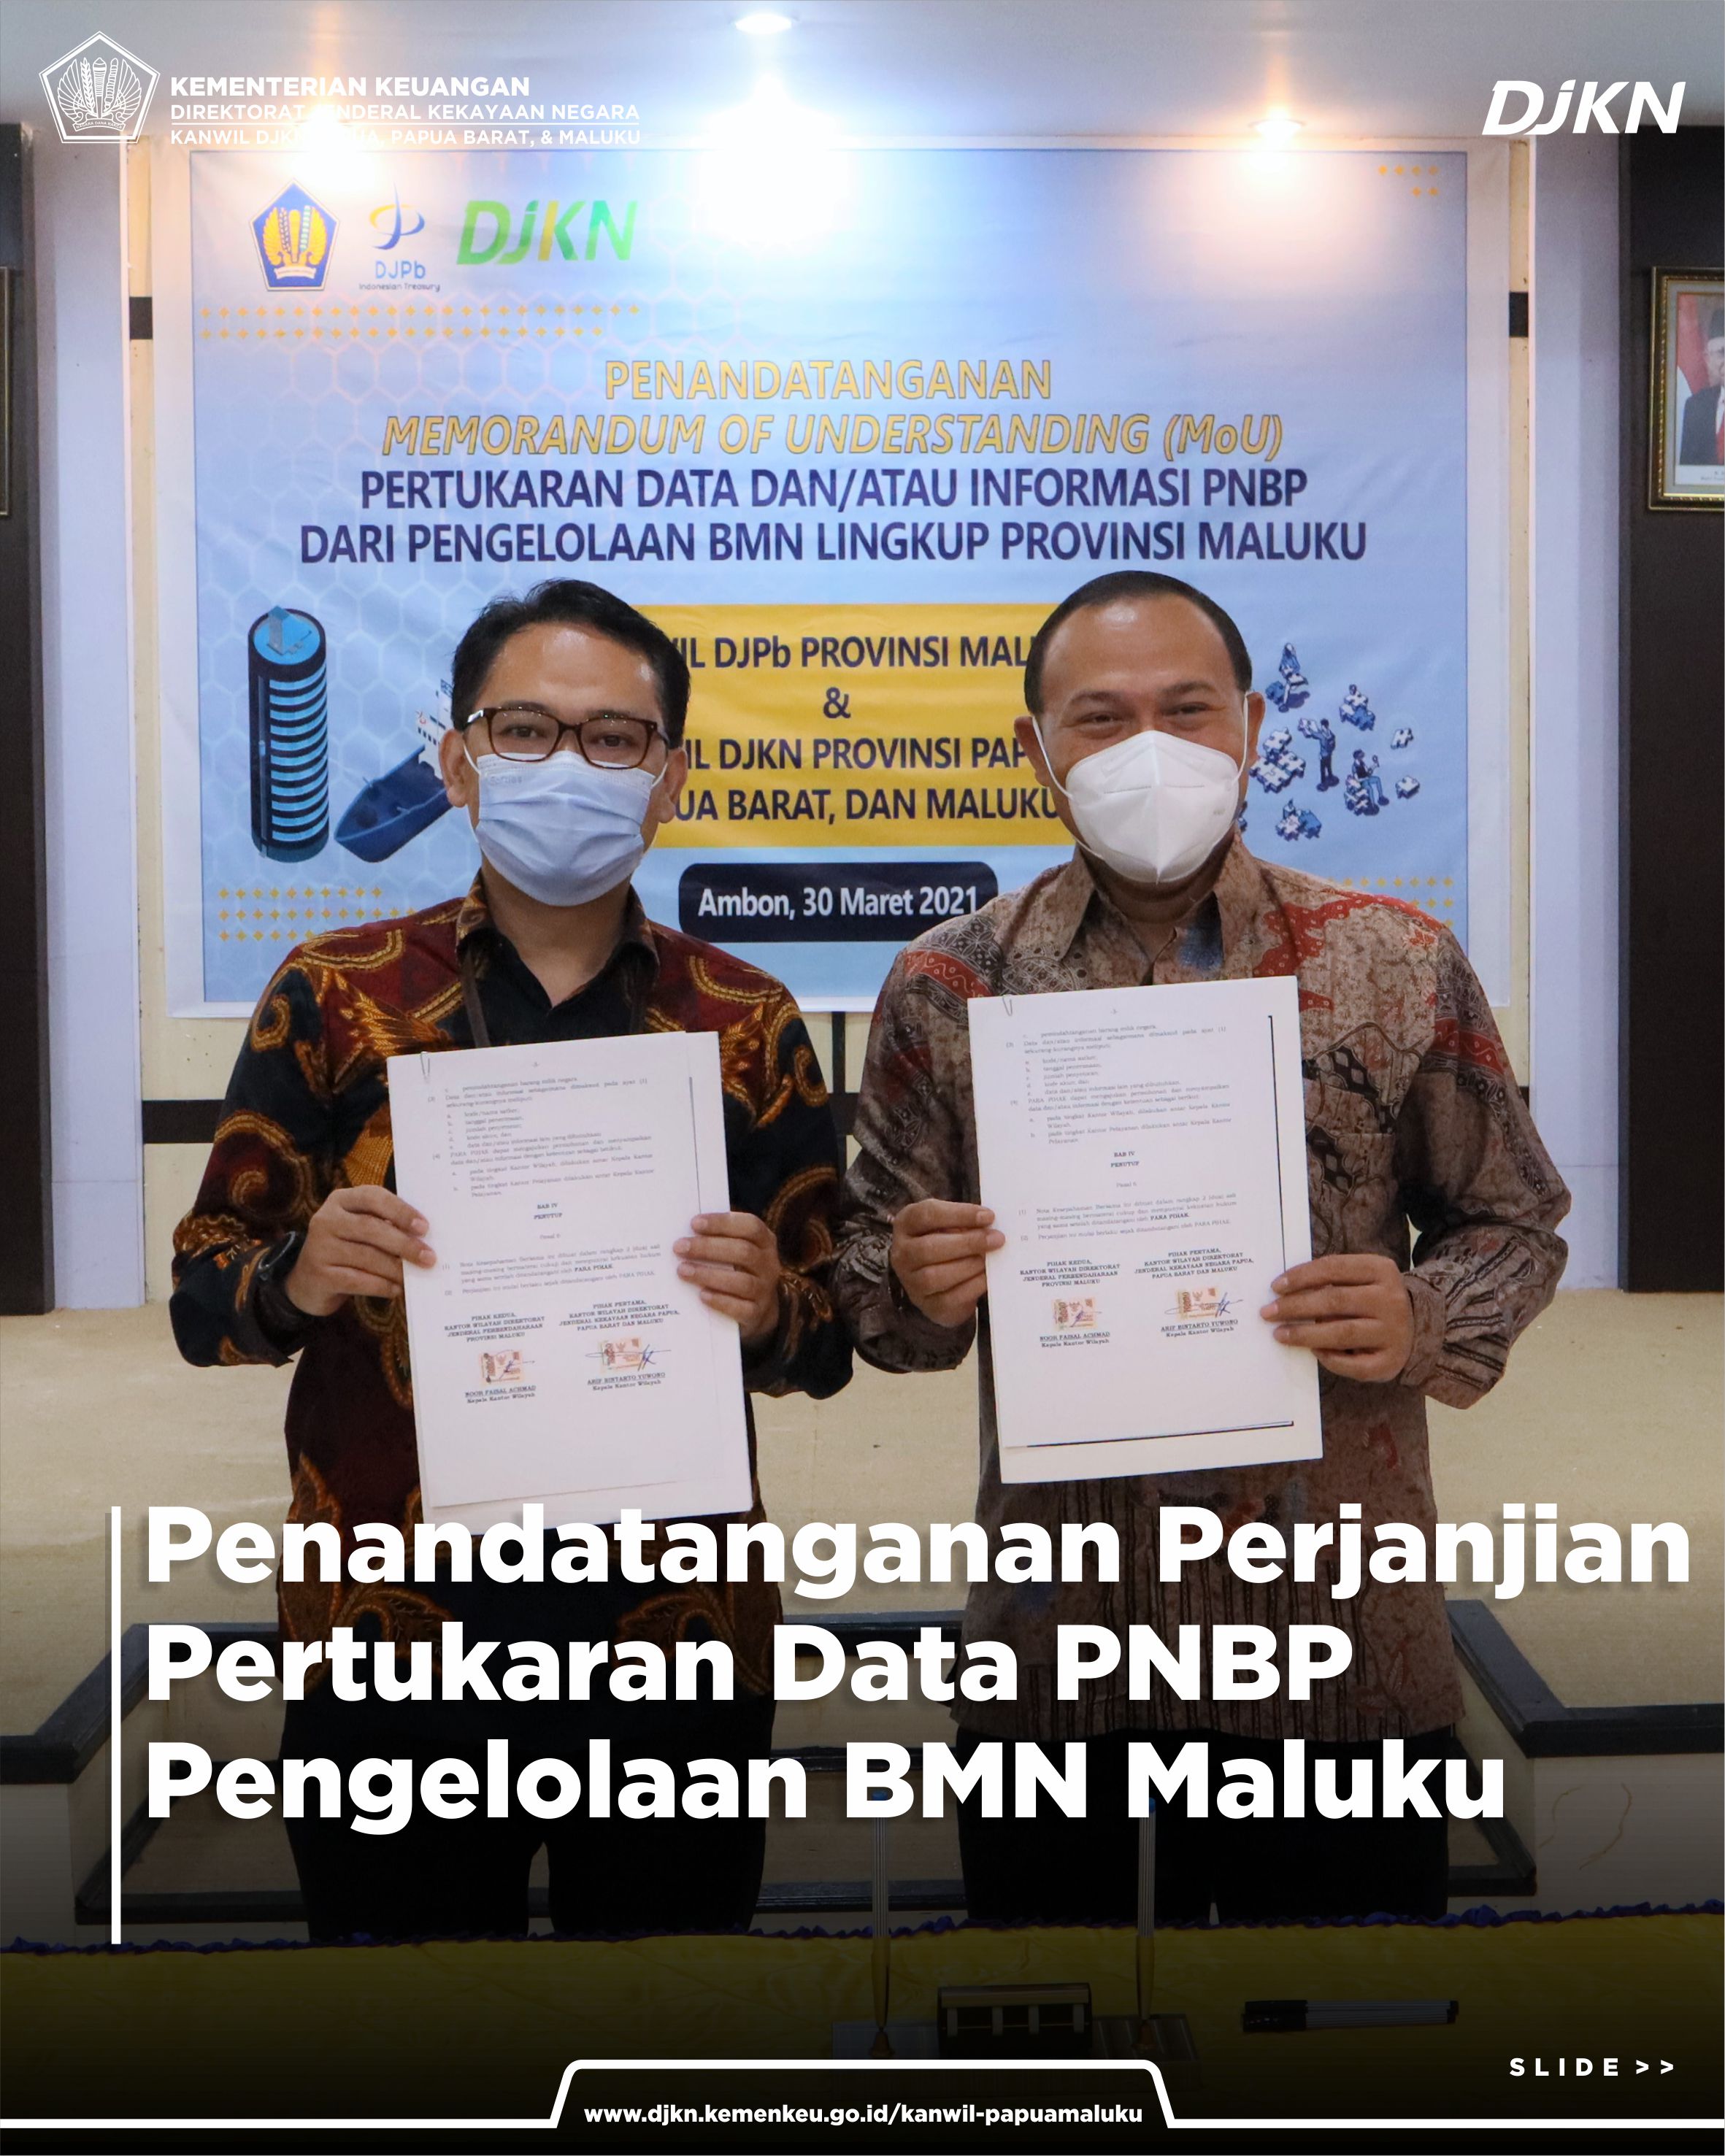 Penandatanganan MoU Pertukaran Data dan Informasi Terkait PNBP Pengelolaan BMN Provinsi Maluku